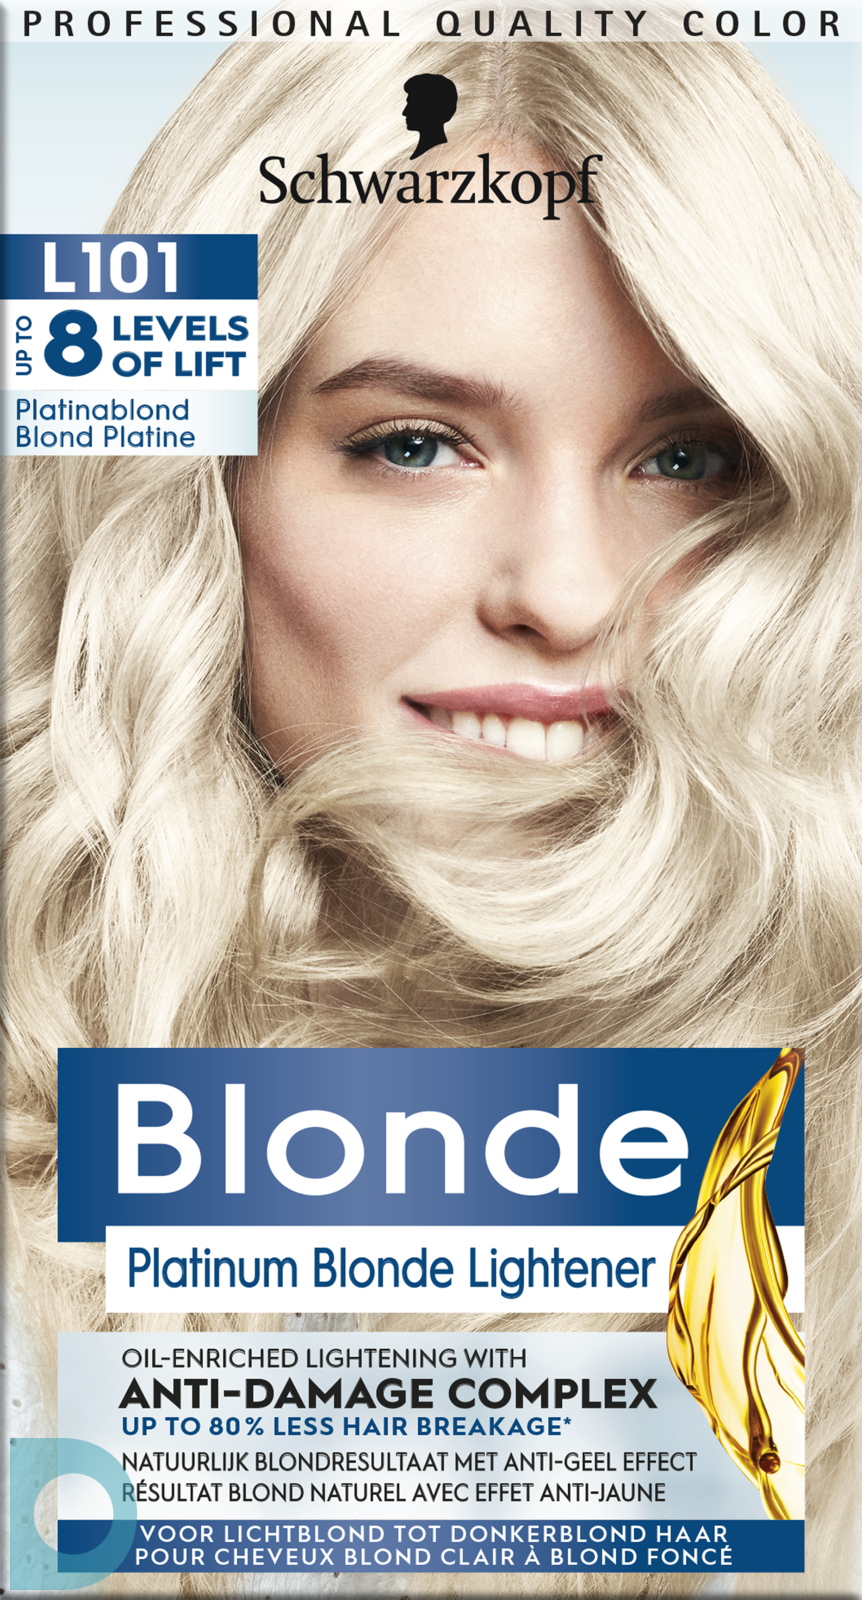 Onafhankelijk semester gebied Schwarzkopf Blonde L101 Platinum Zilver Blond kopen.